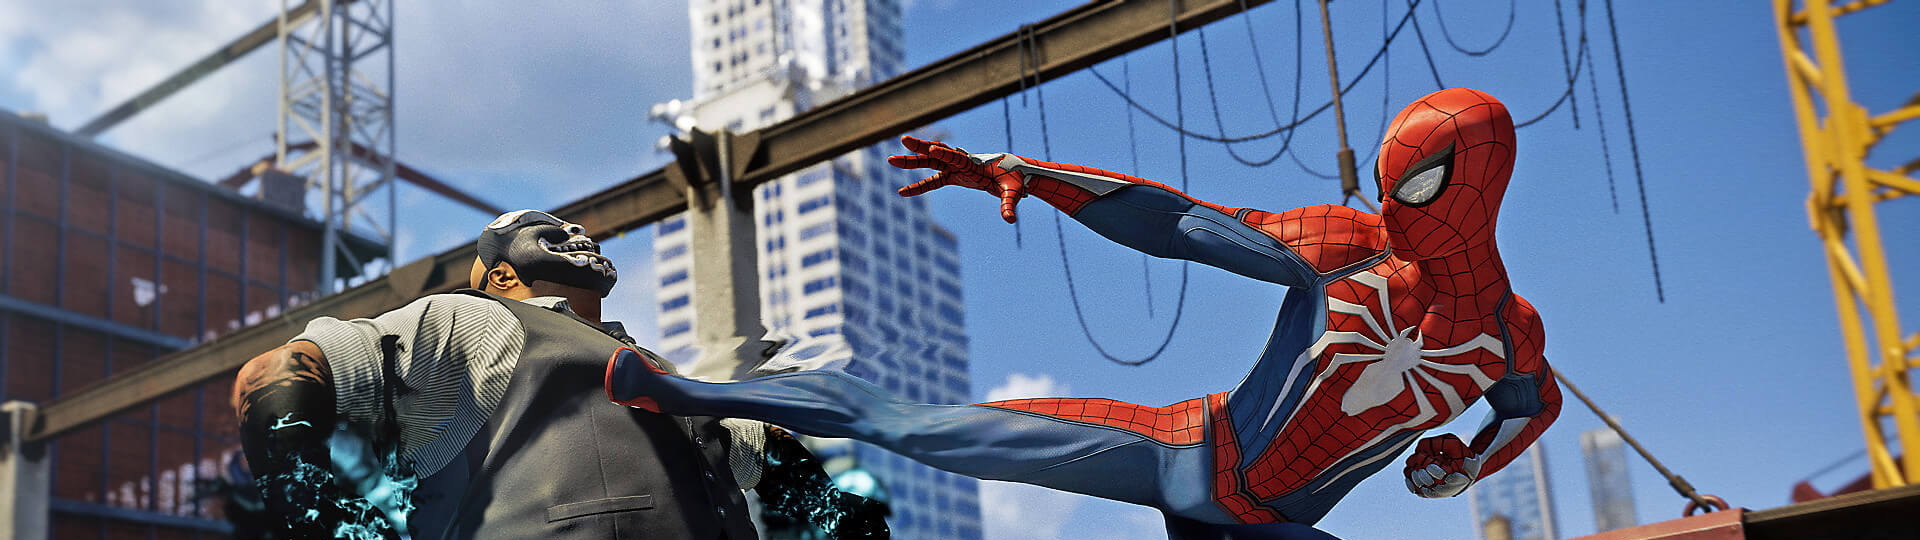 PS5 verze Spider-Mana nebude zdarma, ale nepůjde ani koupit | Novinky